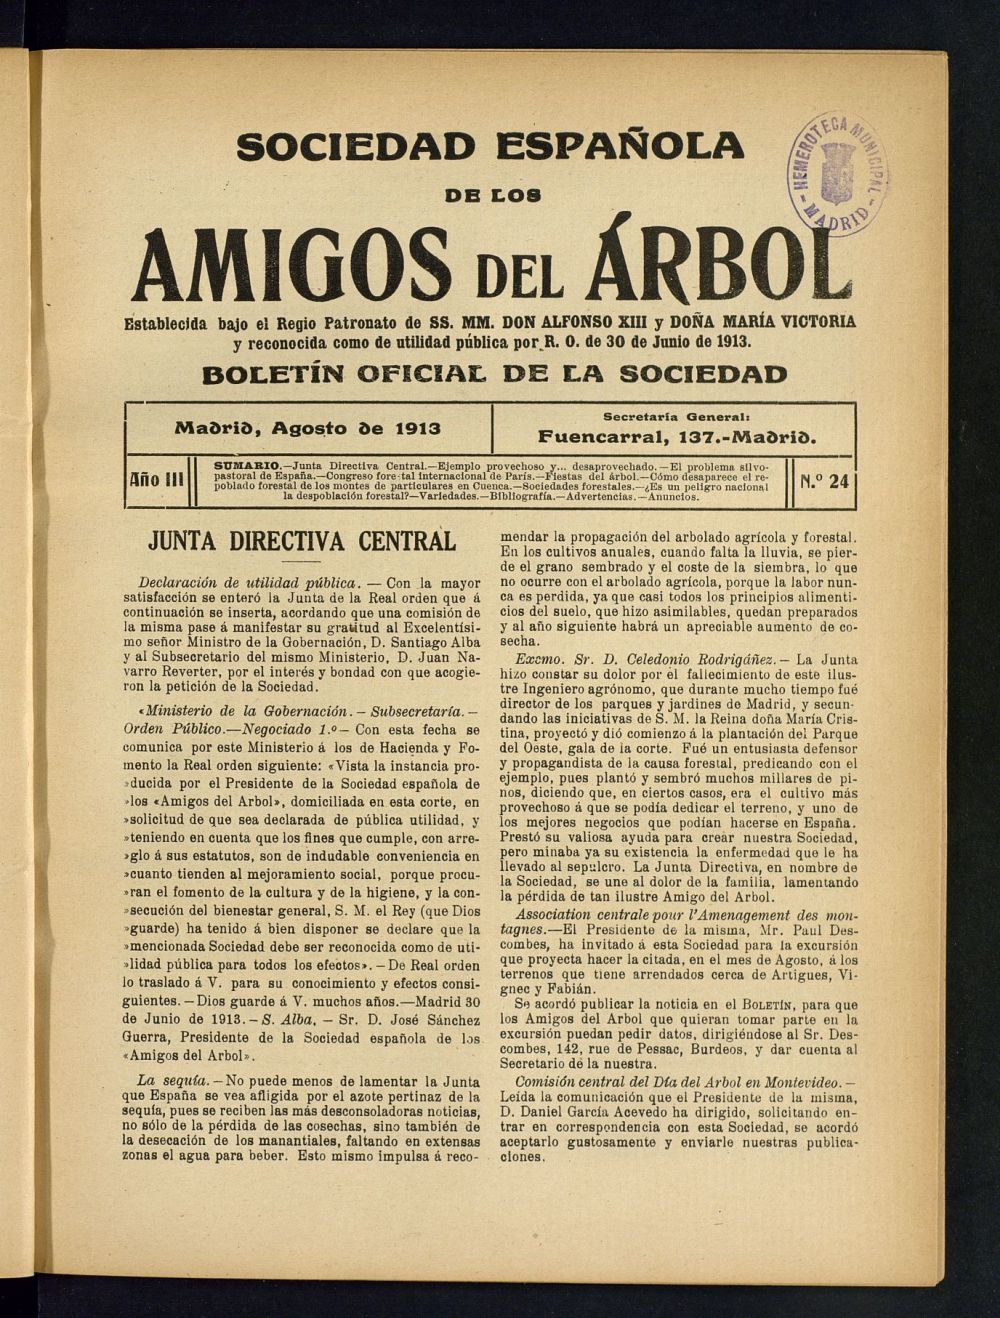 Boletn Comisin organizadora de la Sociedad Espaola de los amigos del rbol de agosto de 1913